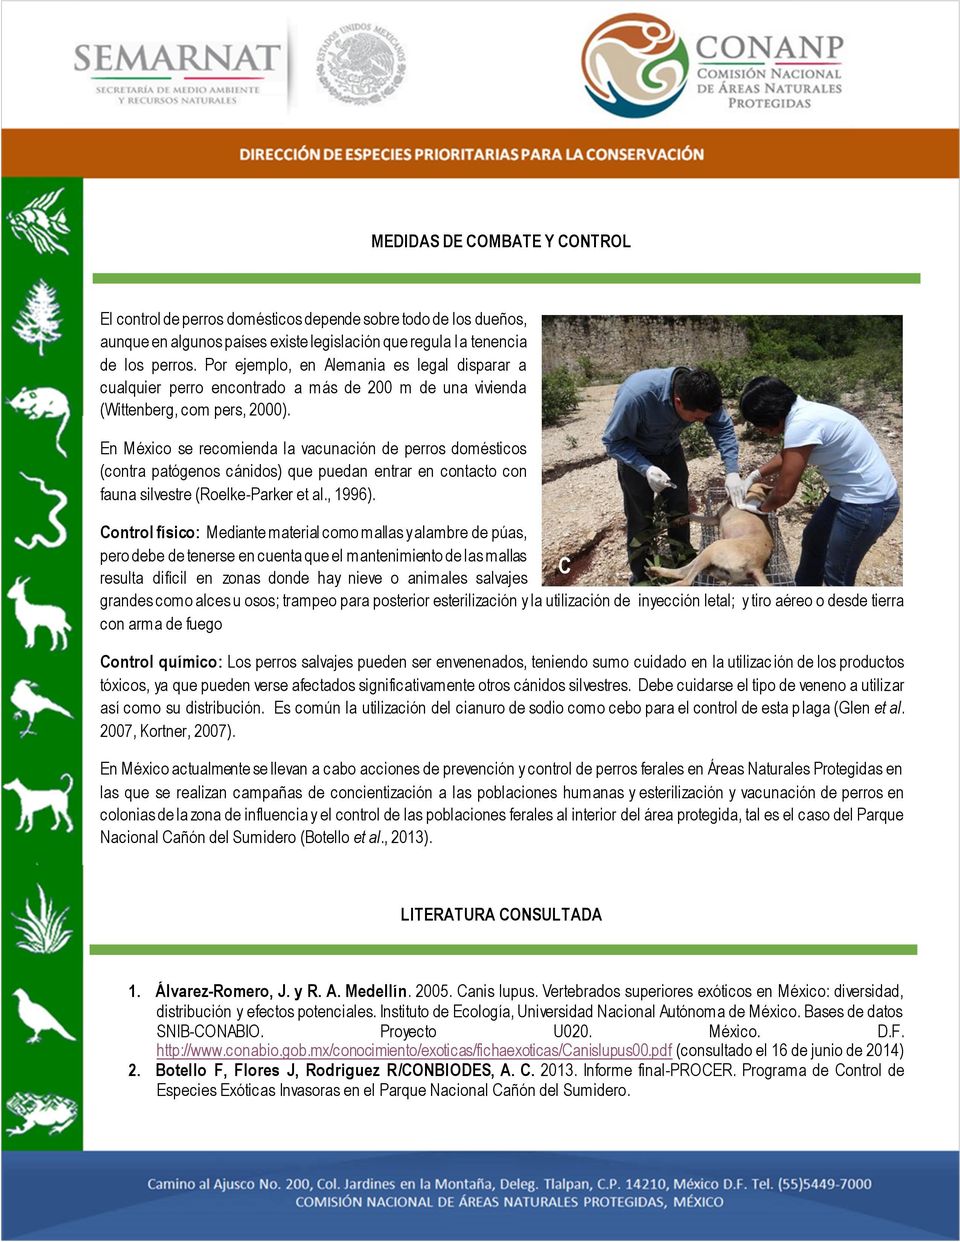 En México se recomienda la vacunación de perros domésticos (contra patógenos cánidos) que puedan entrar en contacto con fauna silvestre (Roelke-Parker et al., 1996).